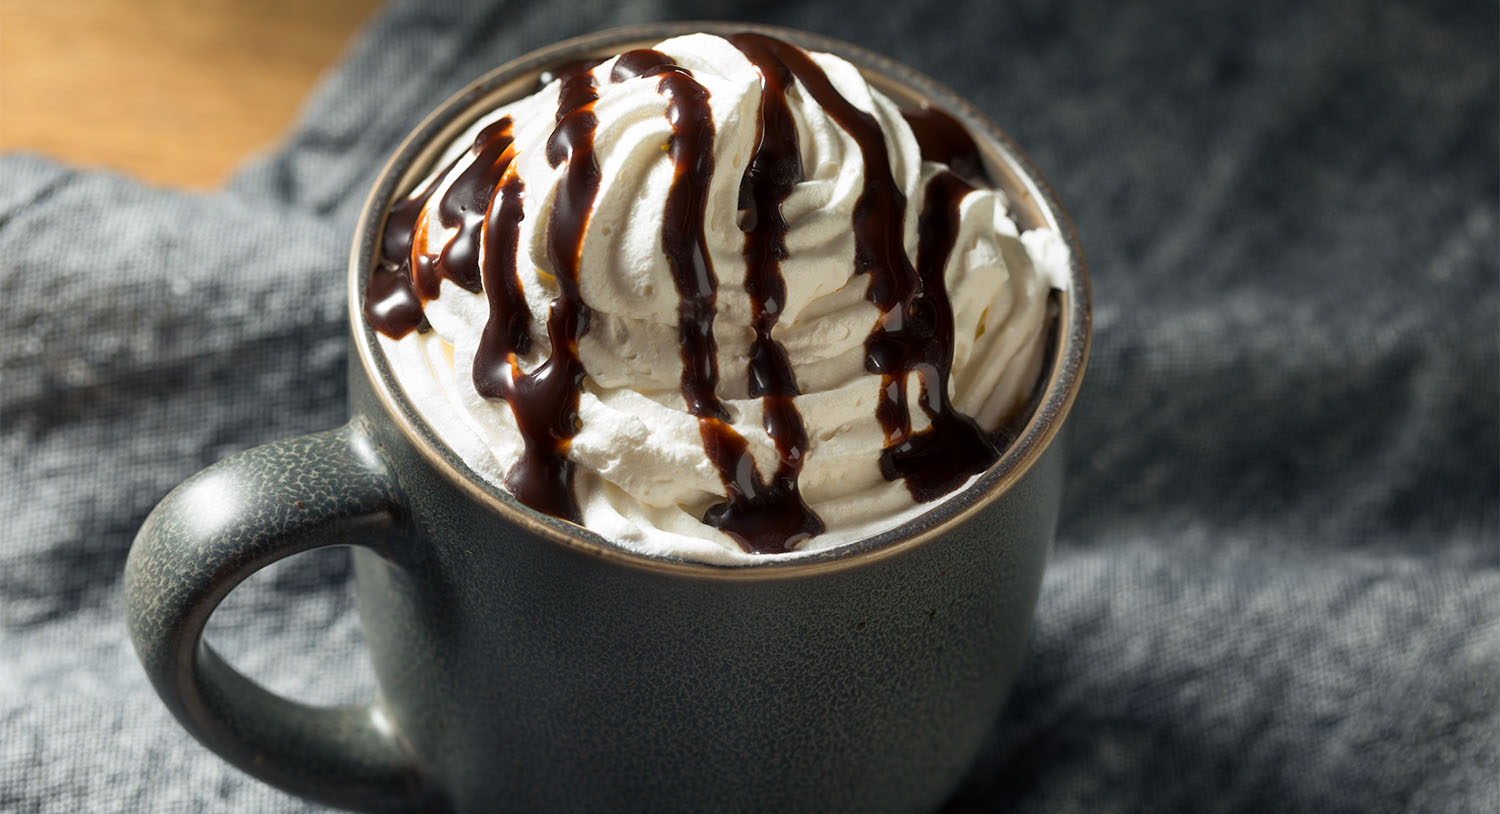 caffe-mocha-kawa-z-bitą-śmietaną-kubek-kawy-słodkiej-z-syropem-czekoladowym